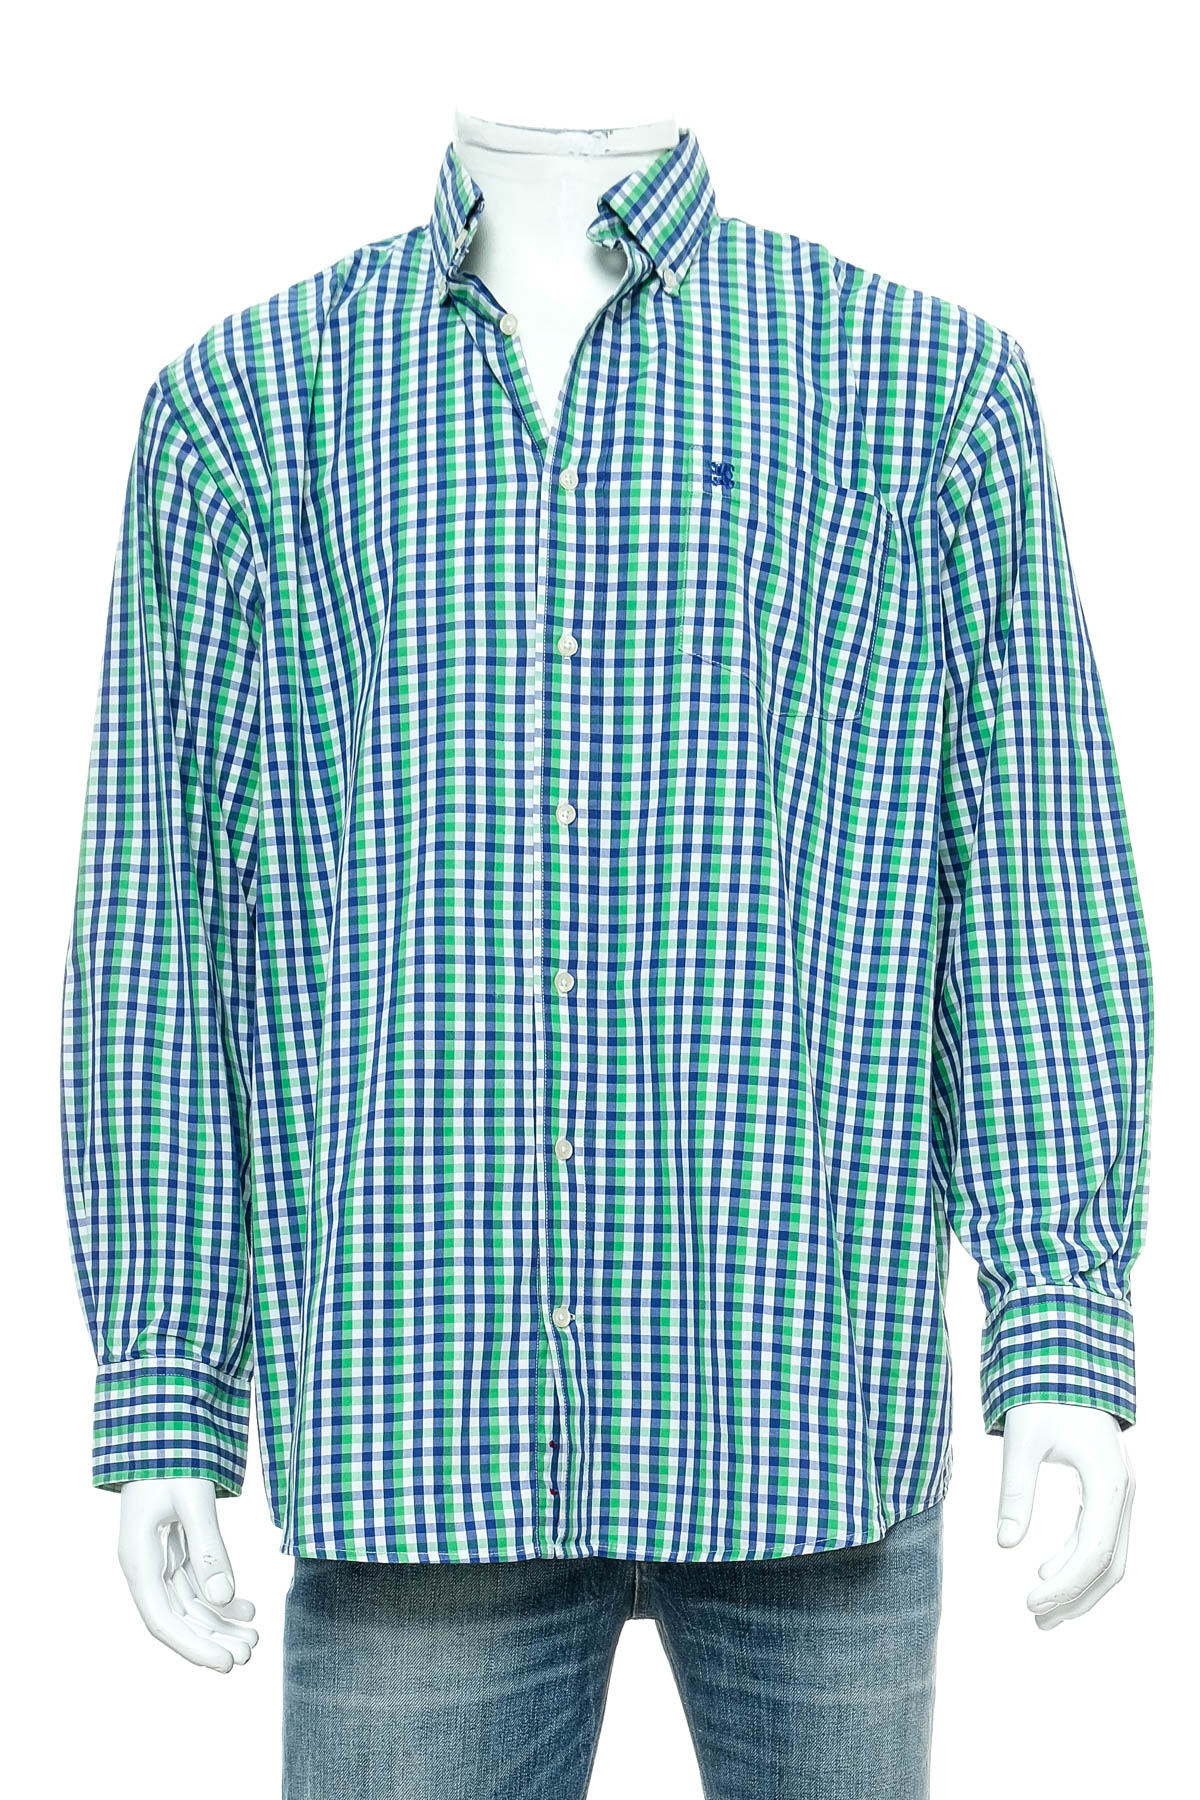 Ανδρικό πουκάμισο - A.W. Dunmore - 0